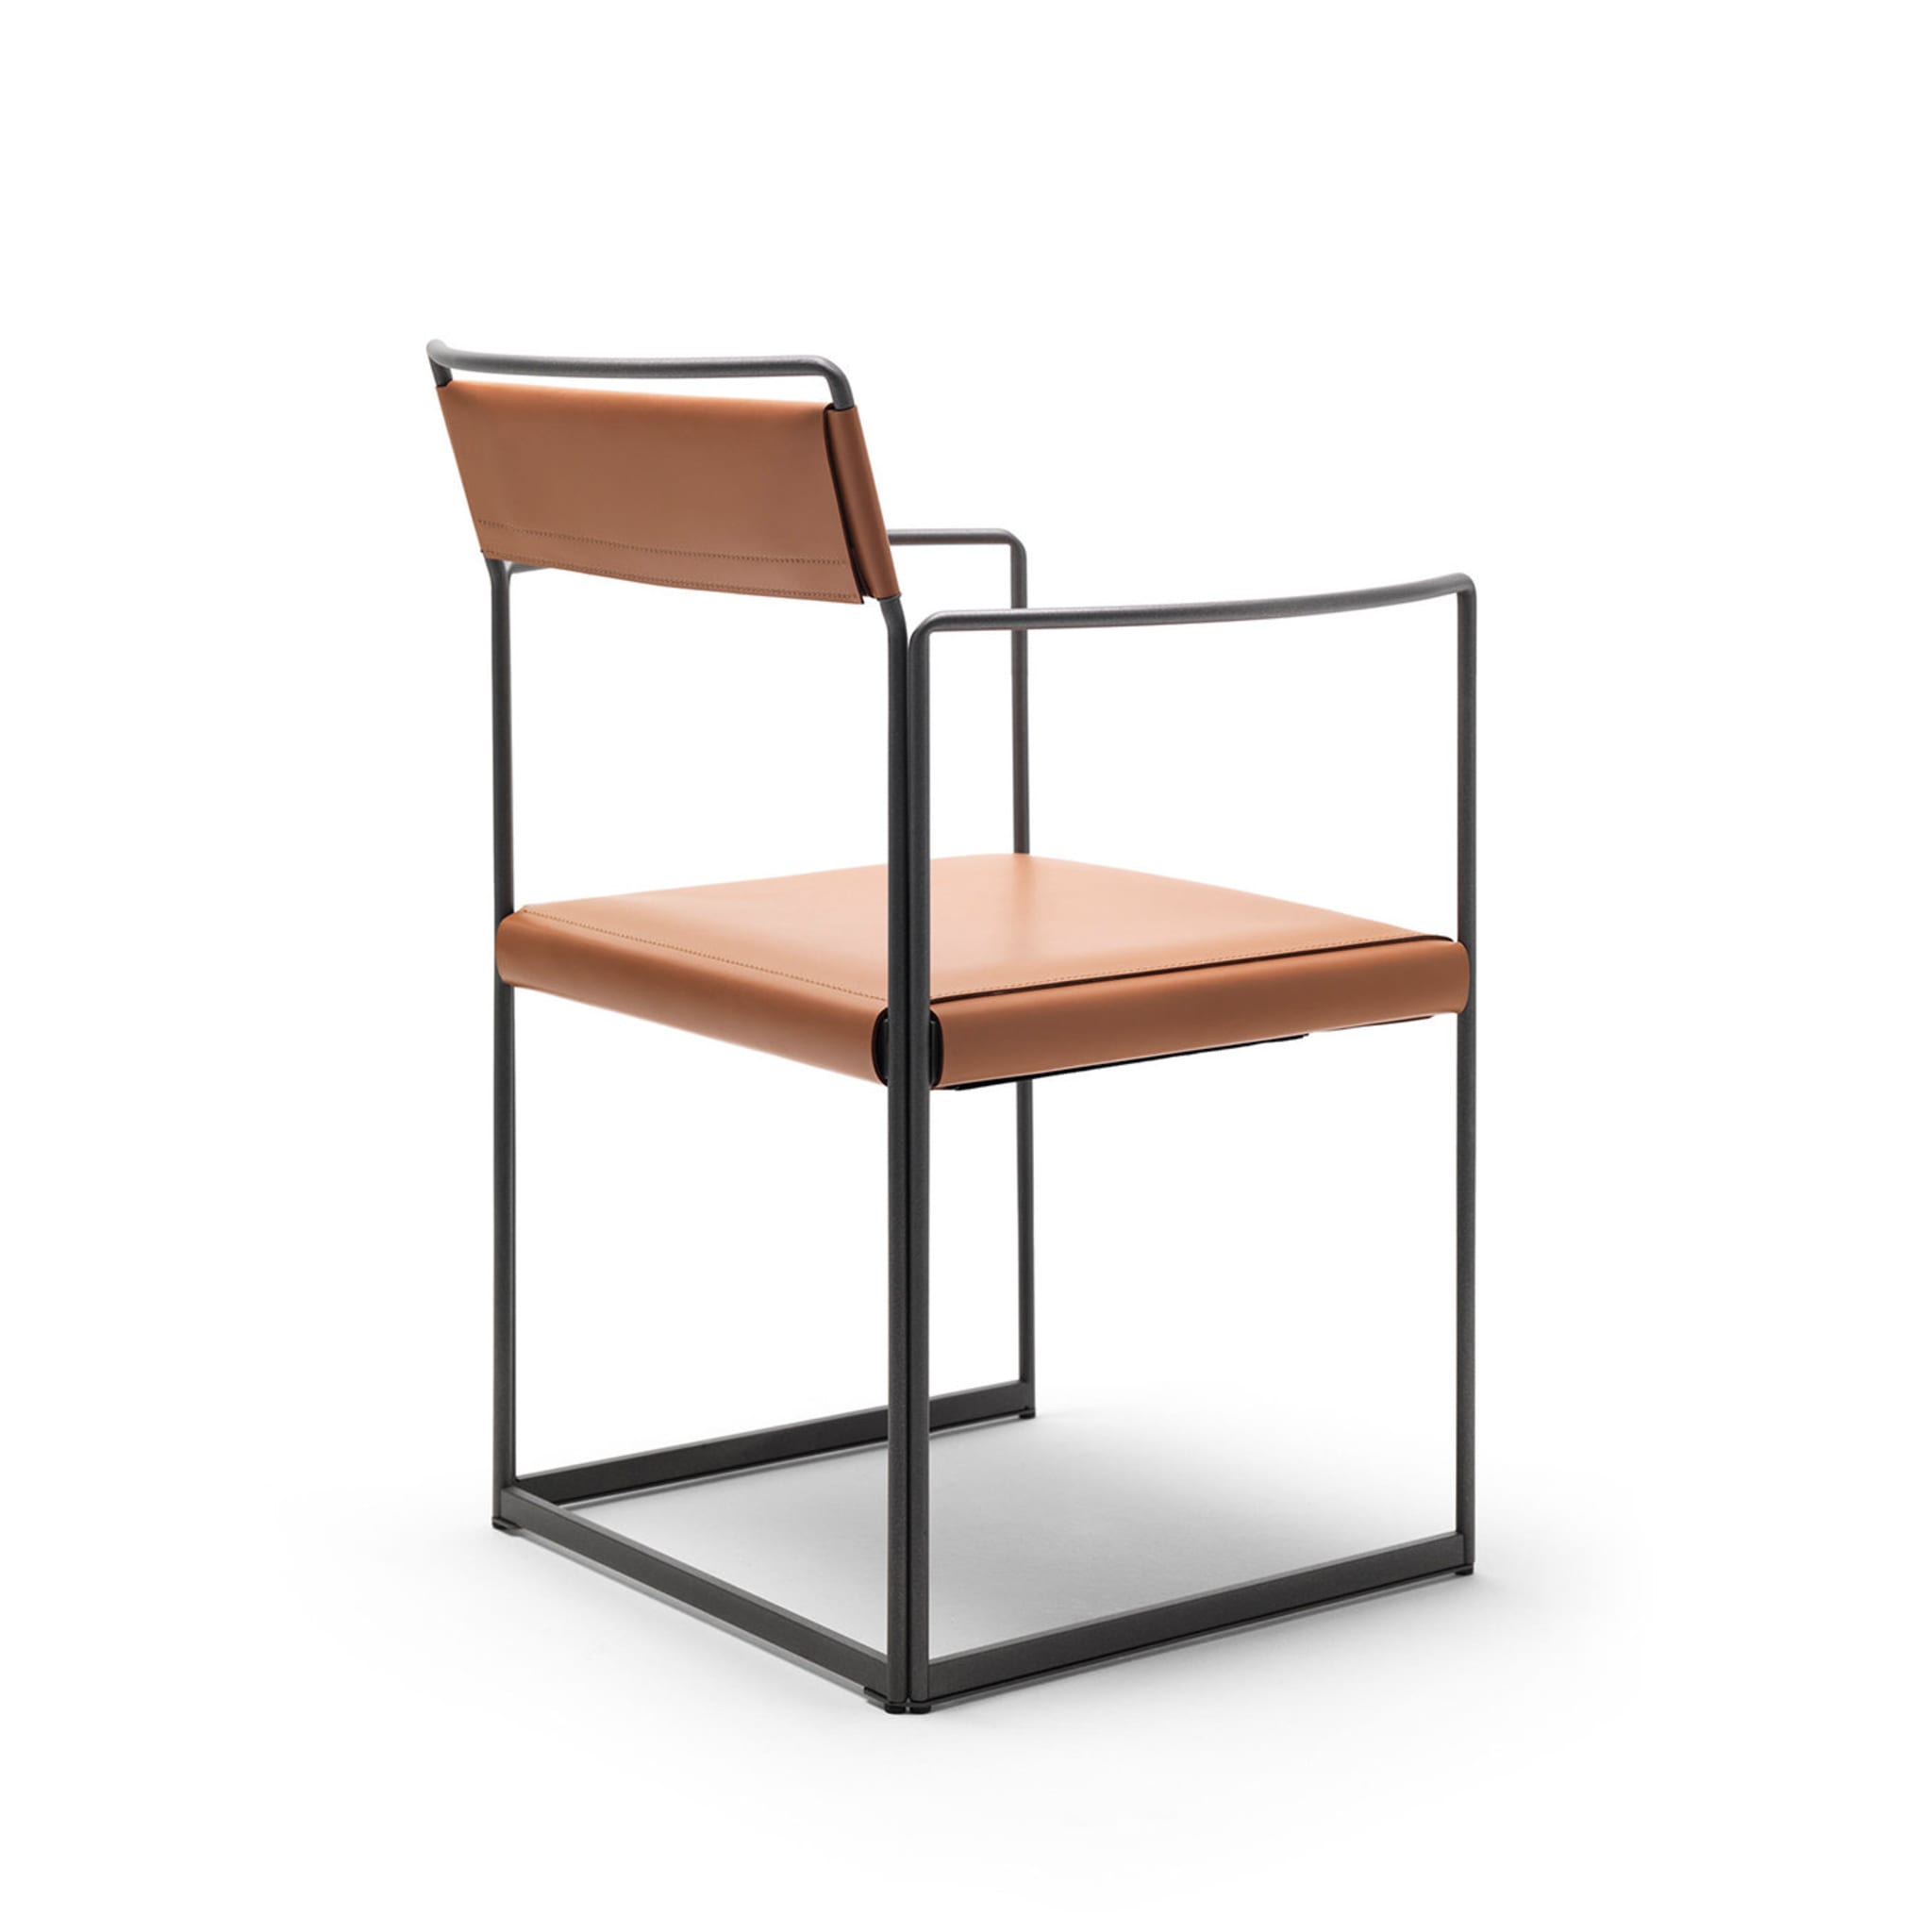 Ne Outline Chair - Alternative view 1